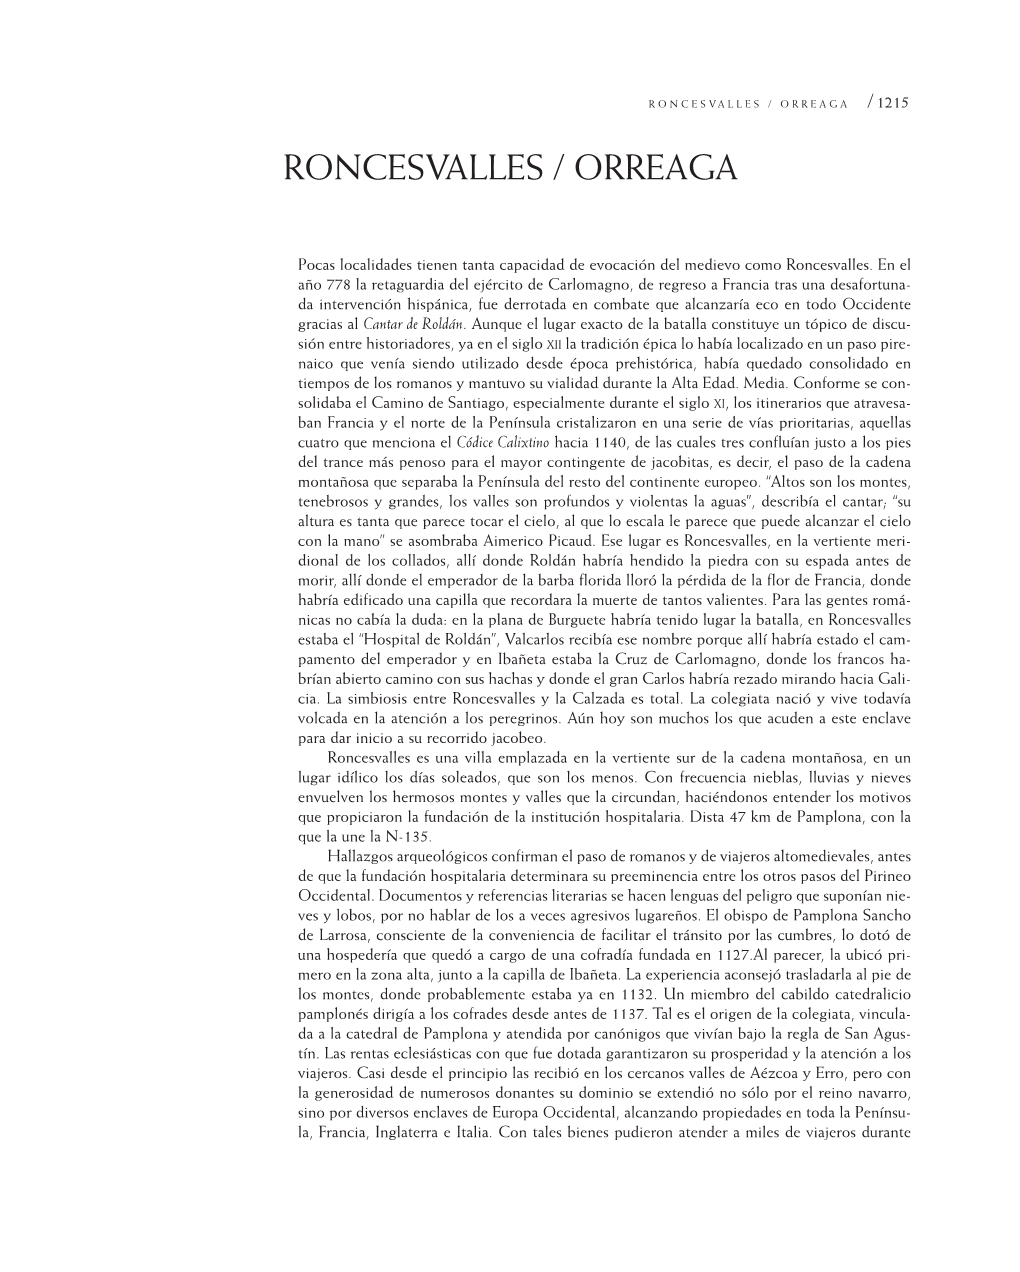 Roncesvalles / Orreaga / 1215